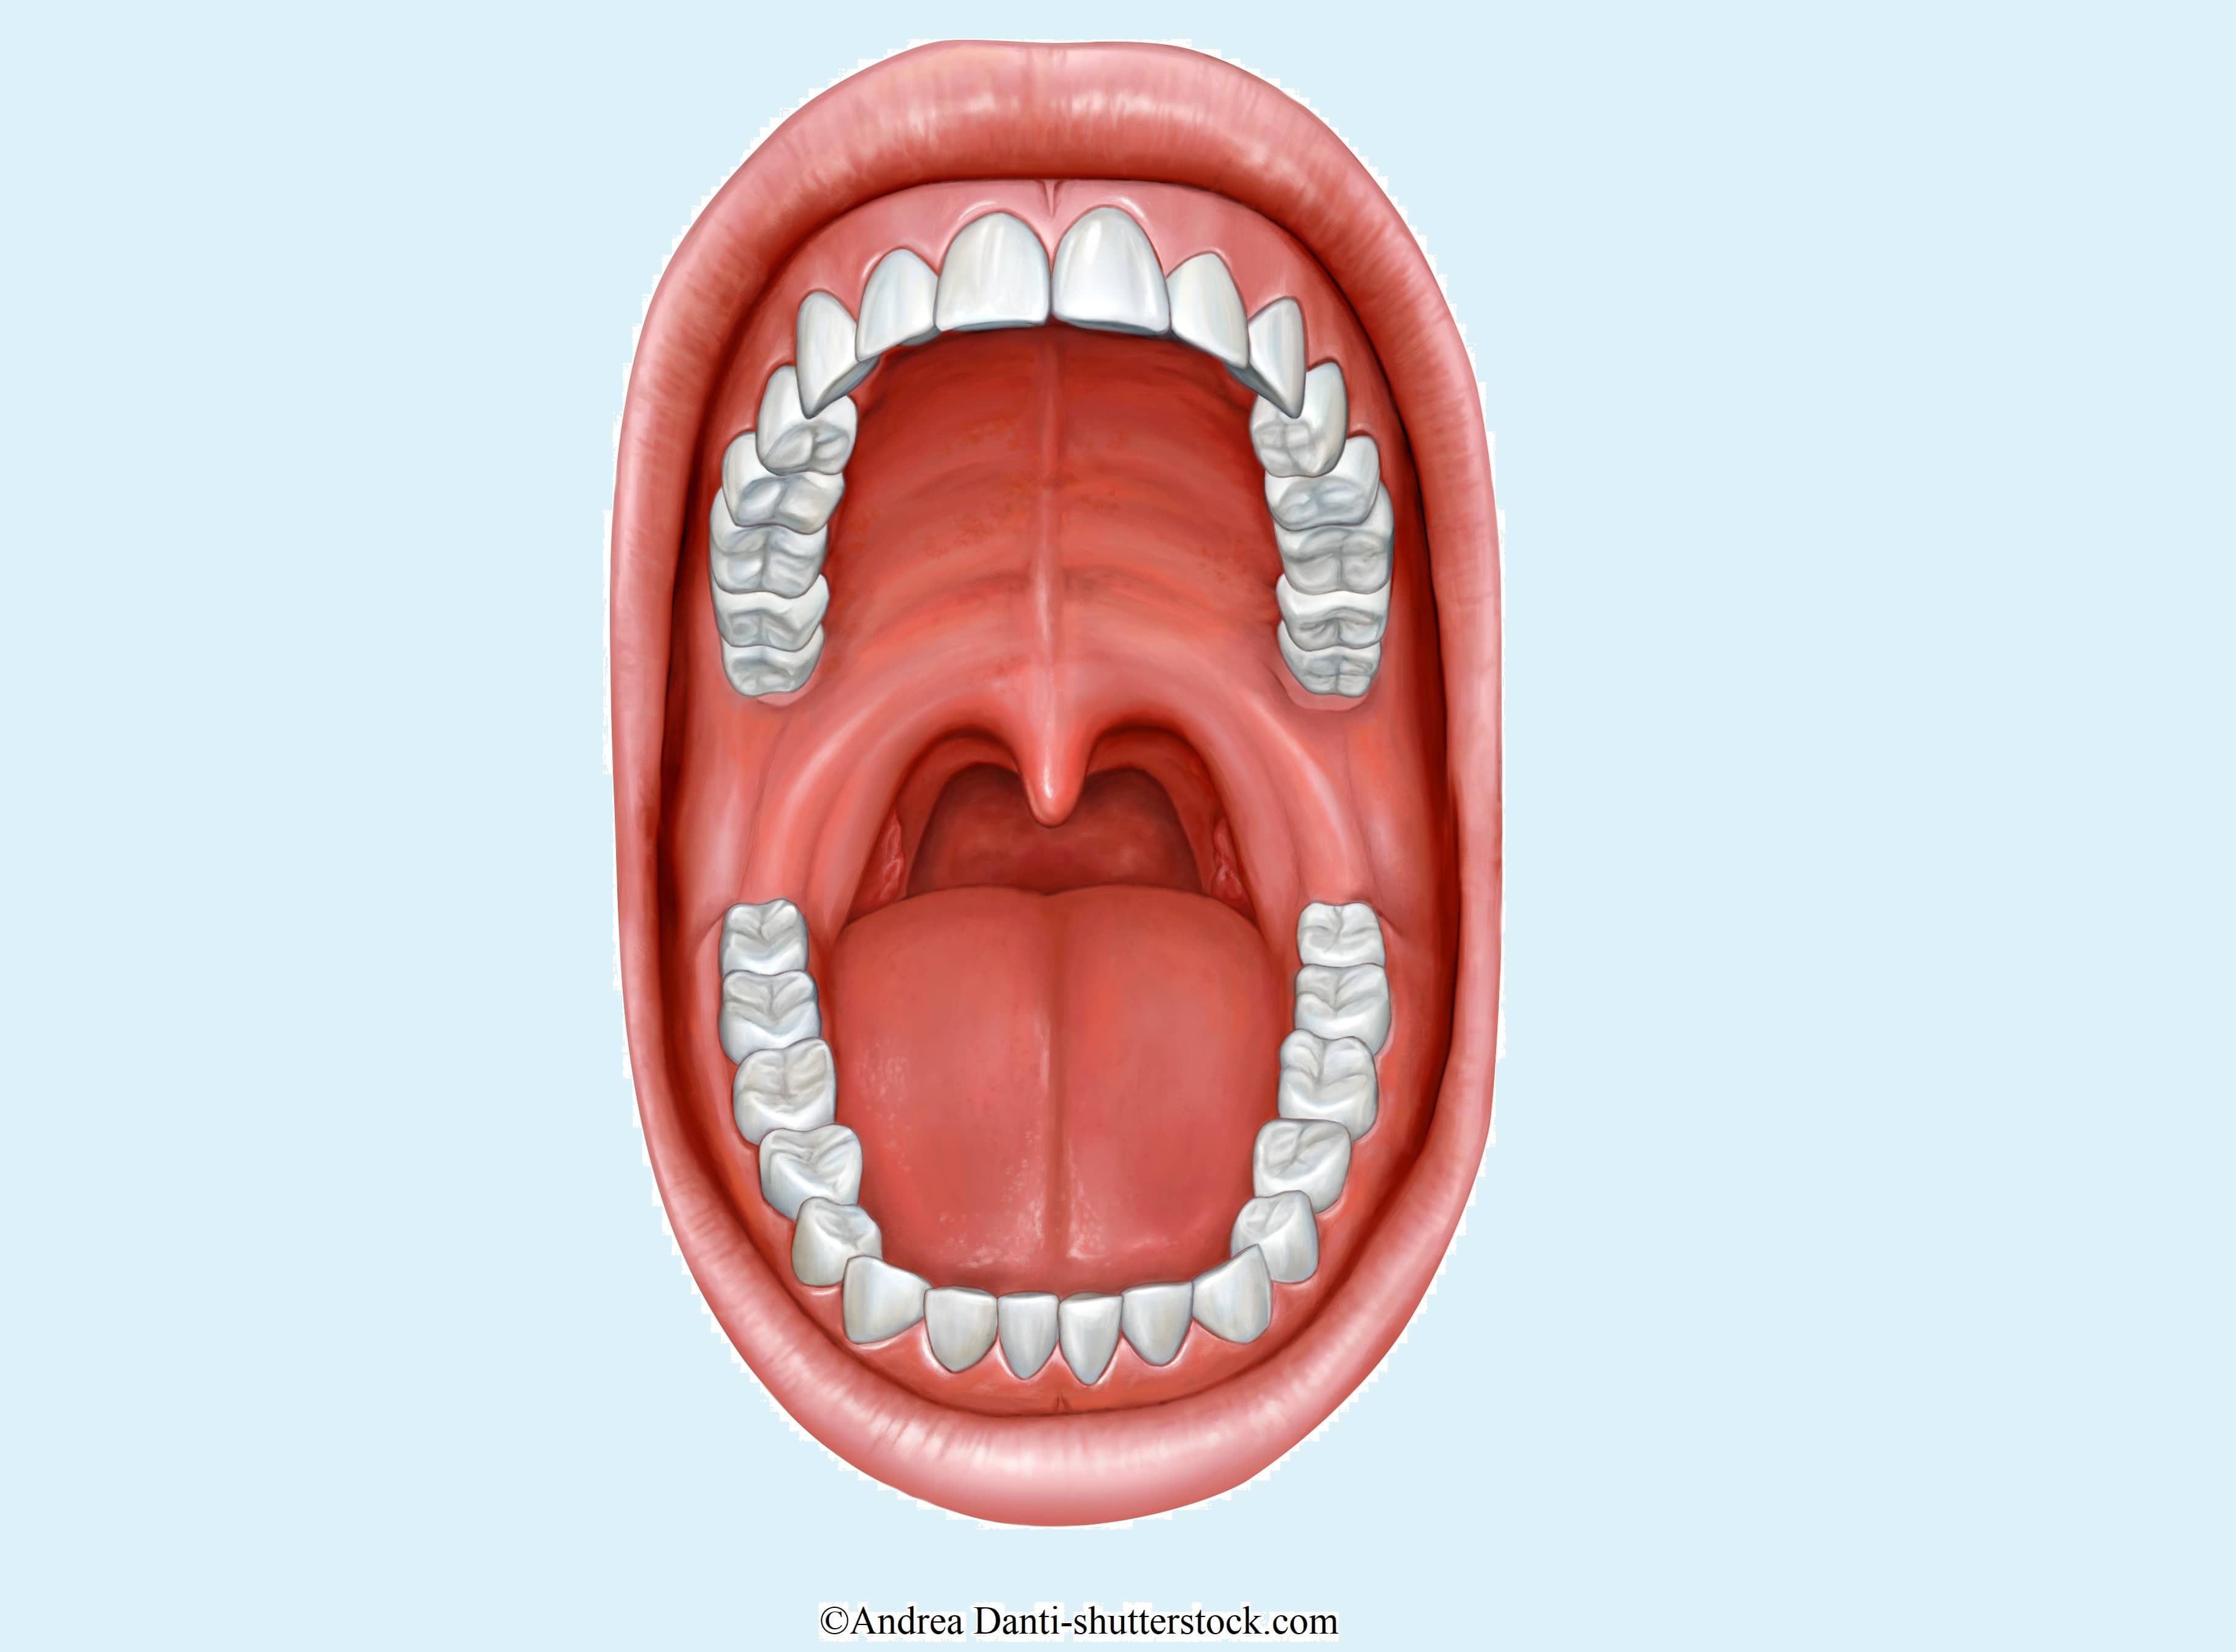 Bitterer Mundgeschmack: Ursachen, Symptome und Heilmittel